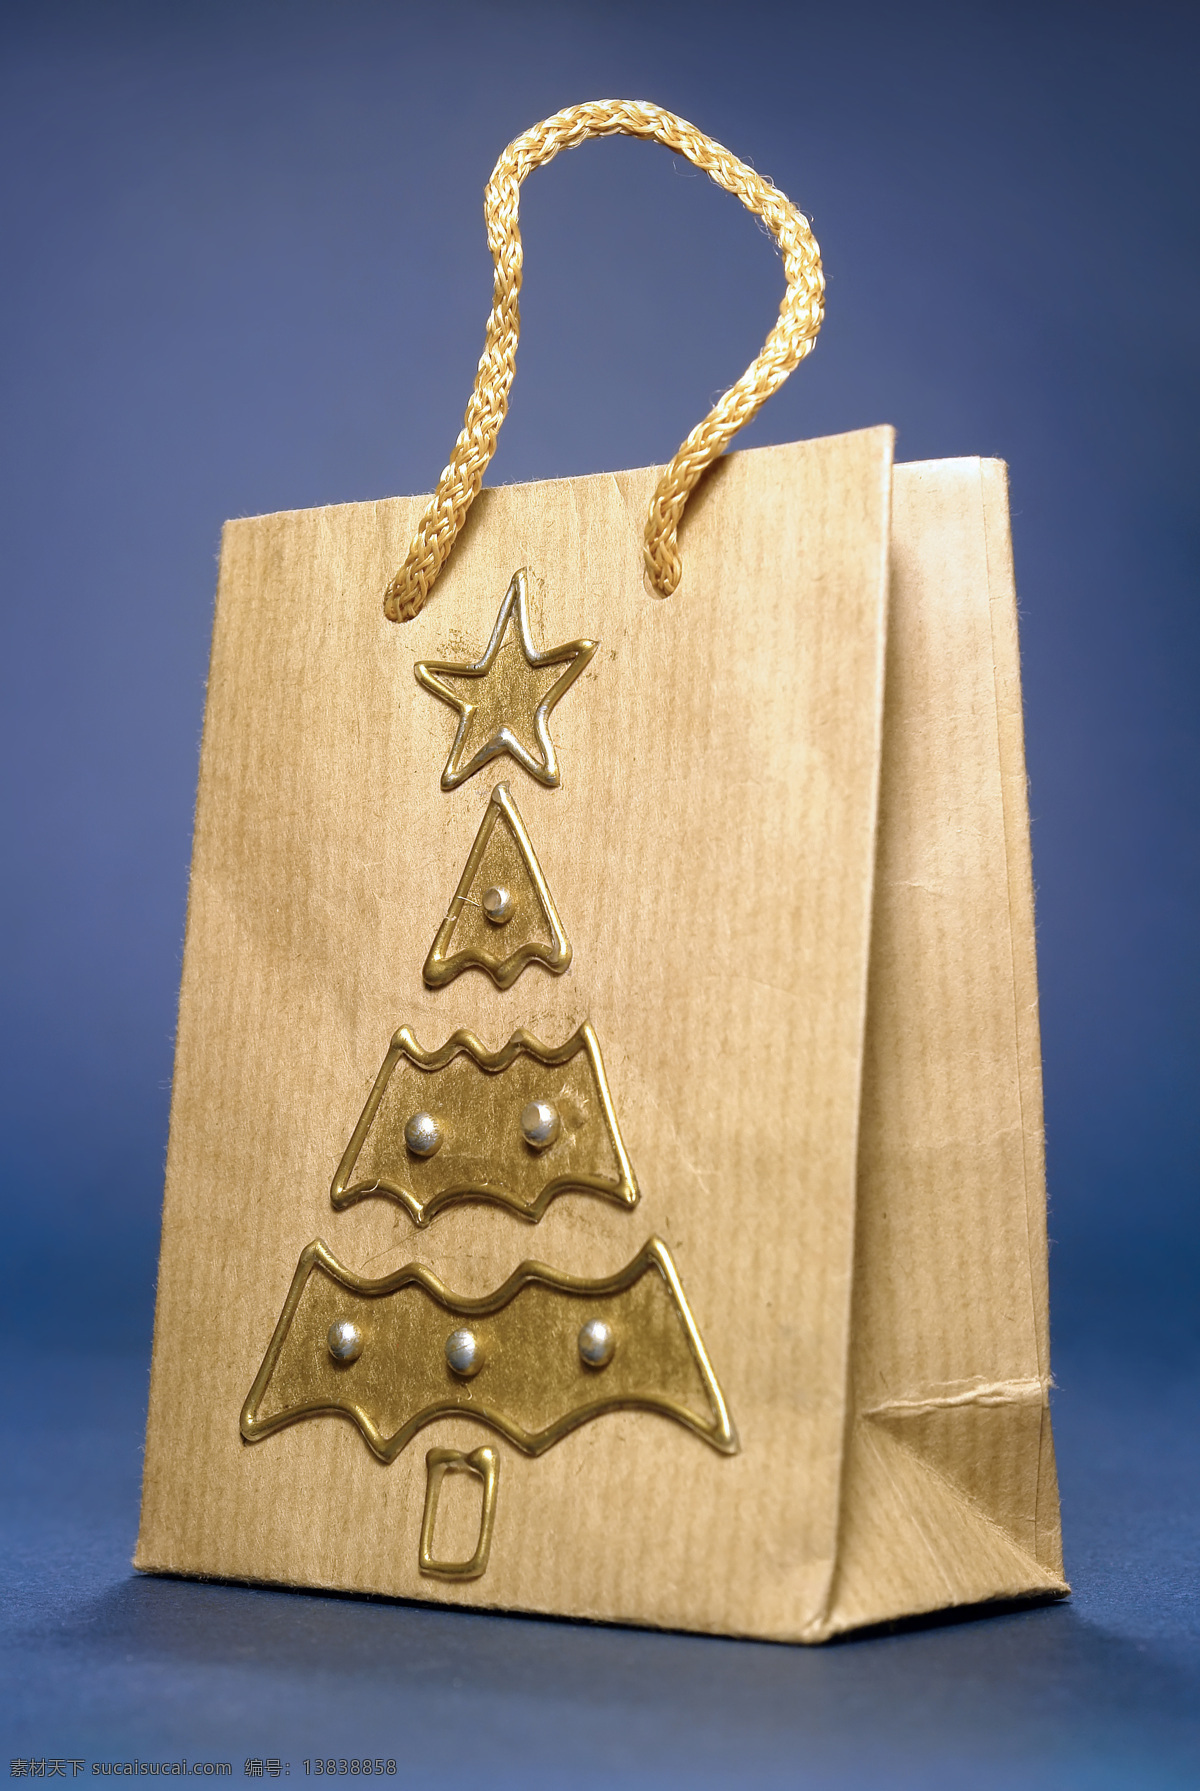 圣诞购物袋 购物袋 包装袋 圣诞 圣诞节 包装设计 圣诞素材 节日素材 其他类别 生活百科 黄色